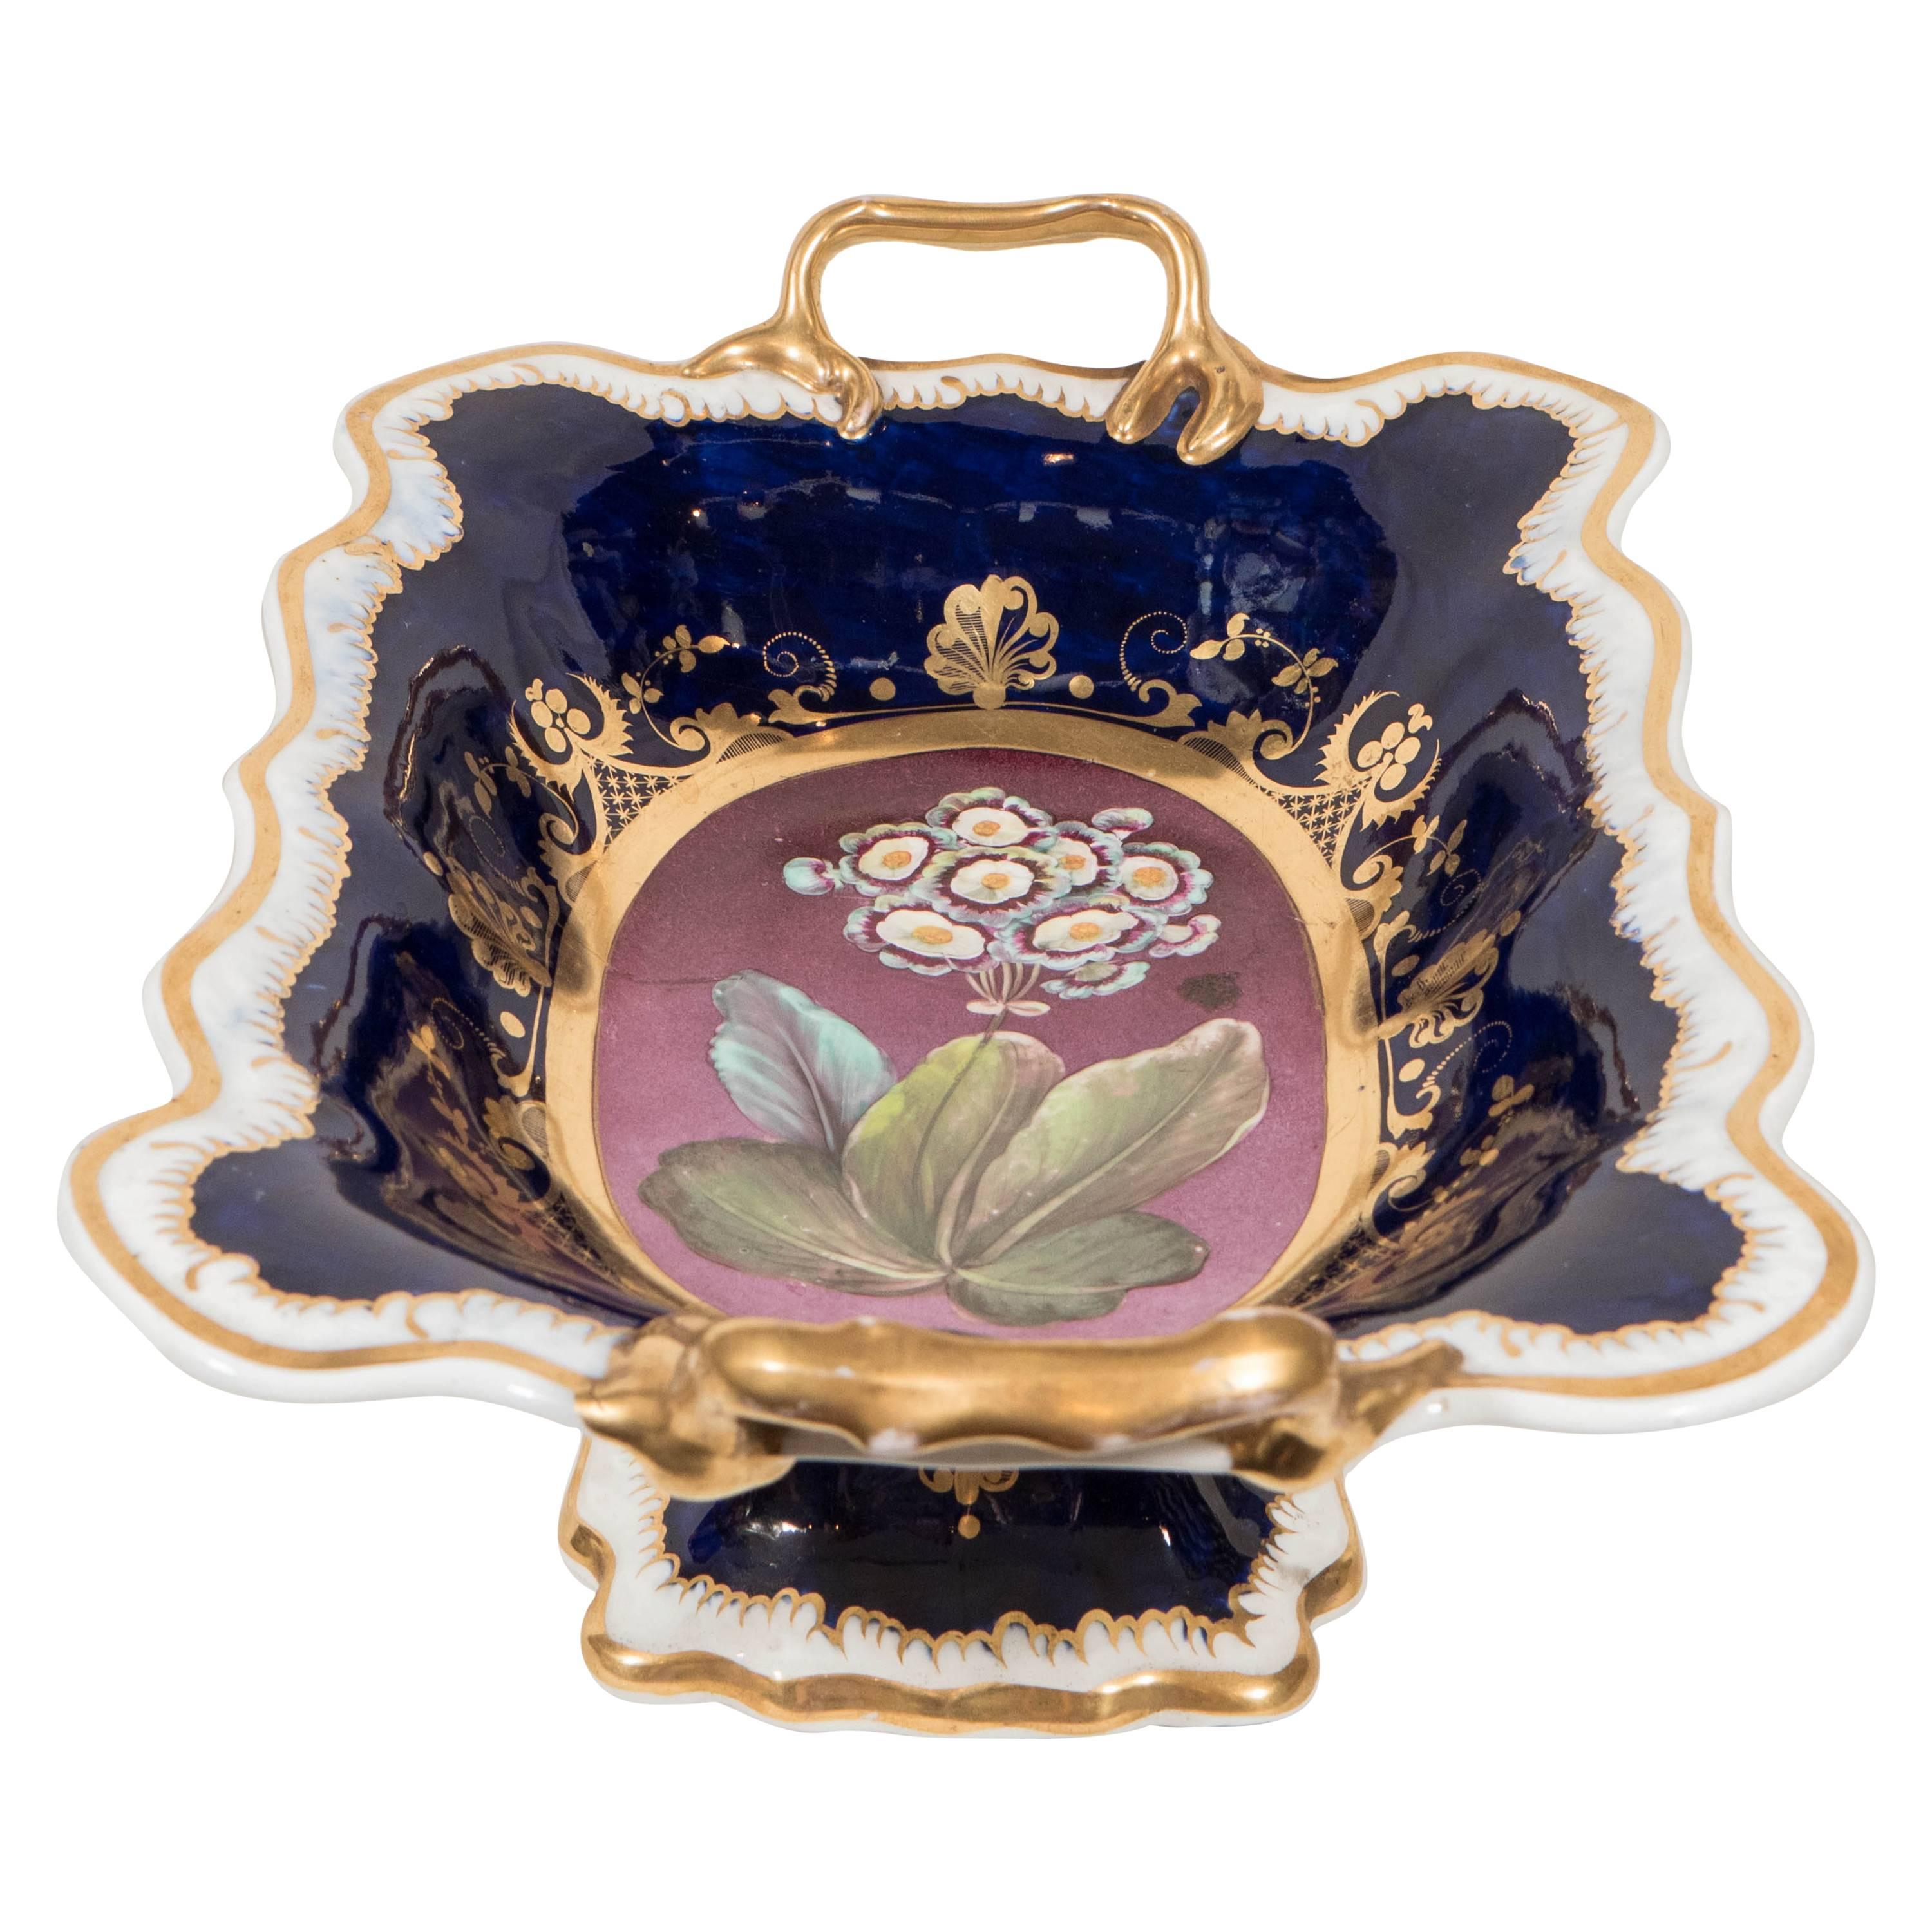 Antique English Porcelain Fruit Bowl Cobalt Blue and Purple Made circa 1810